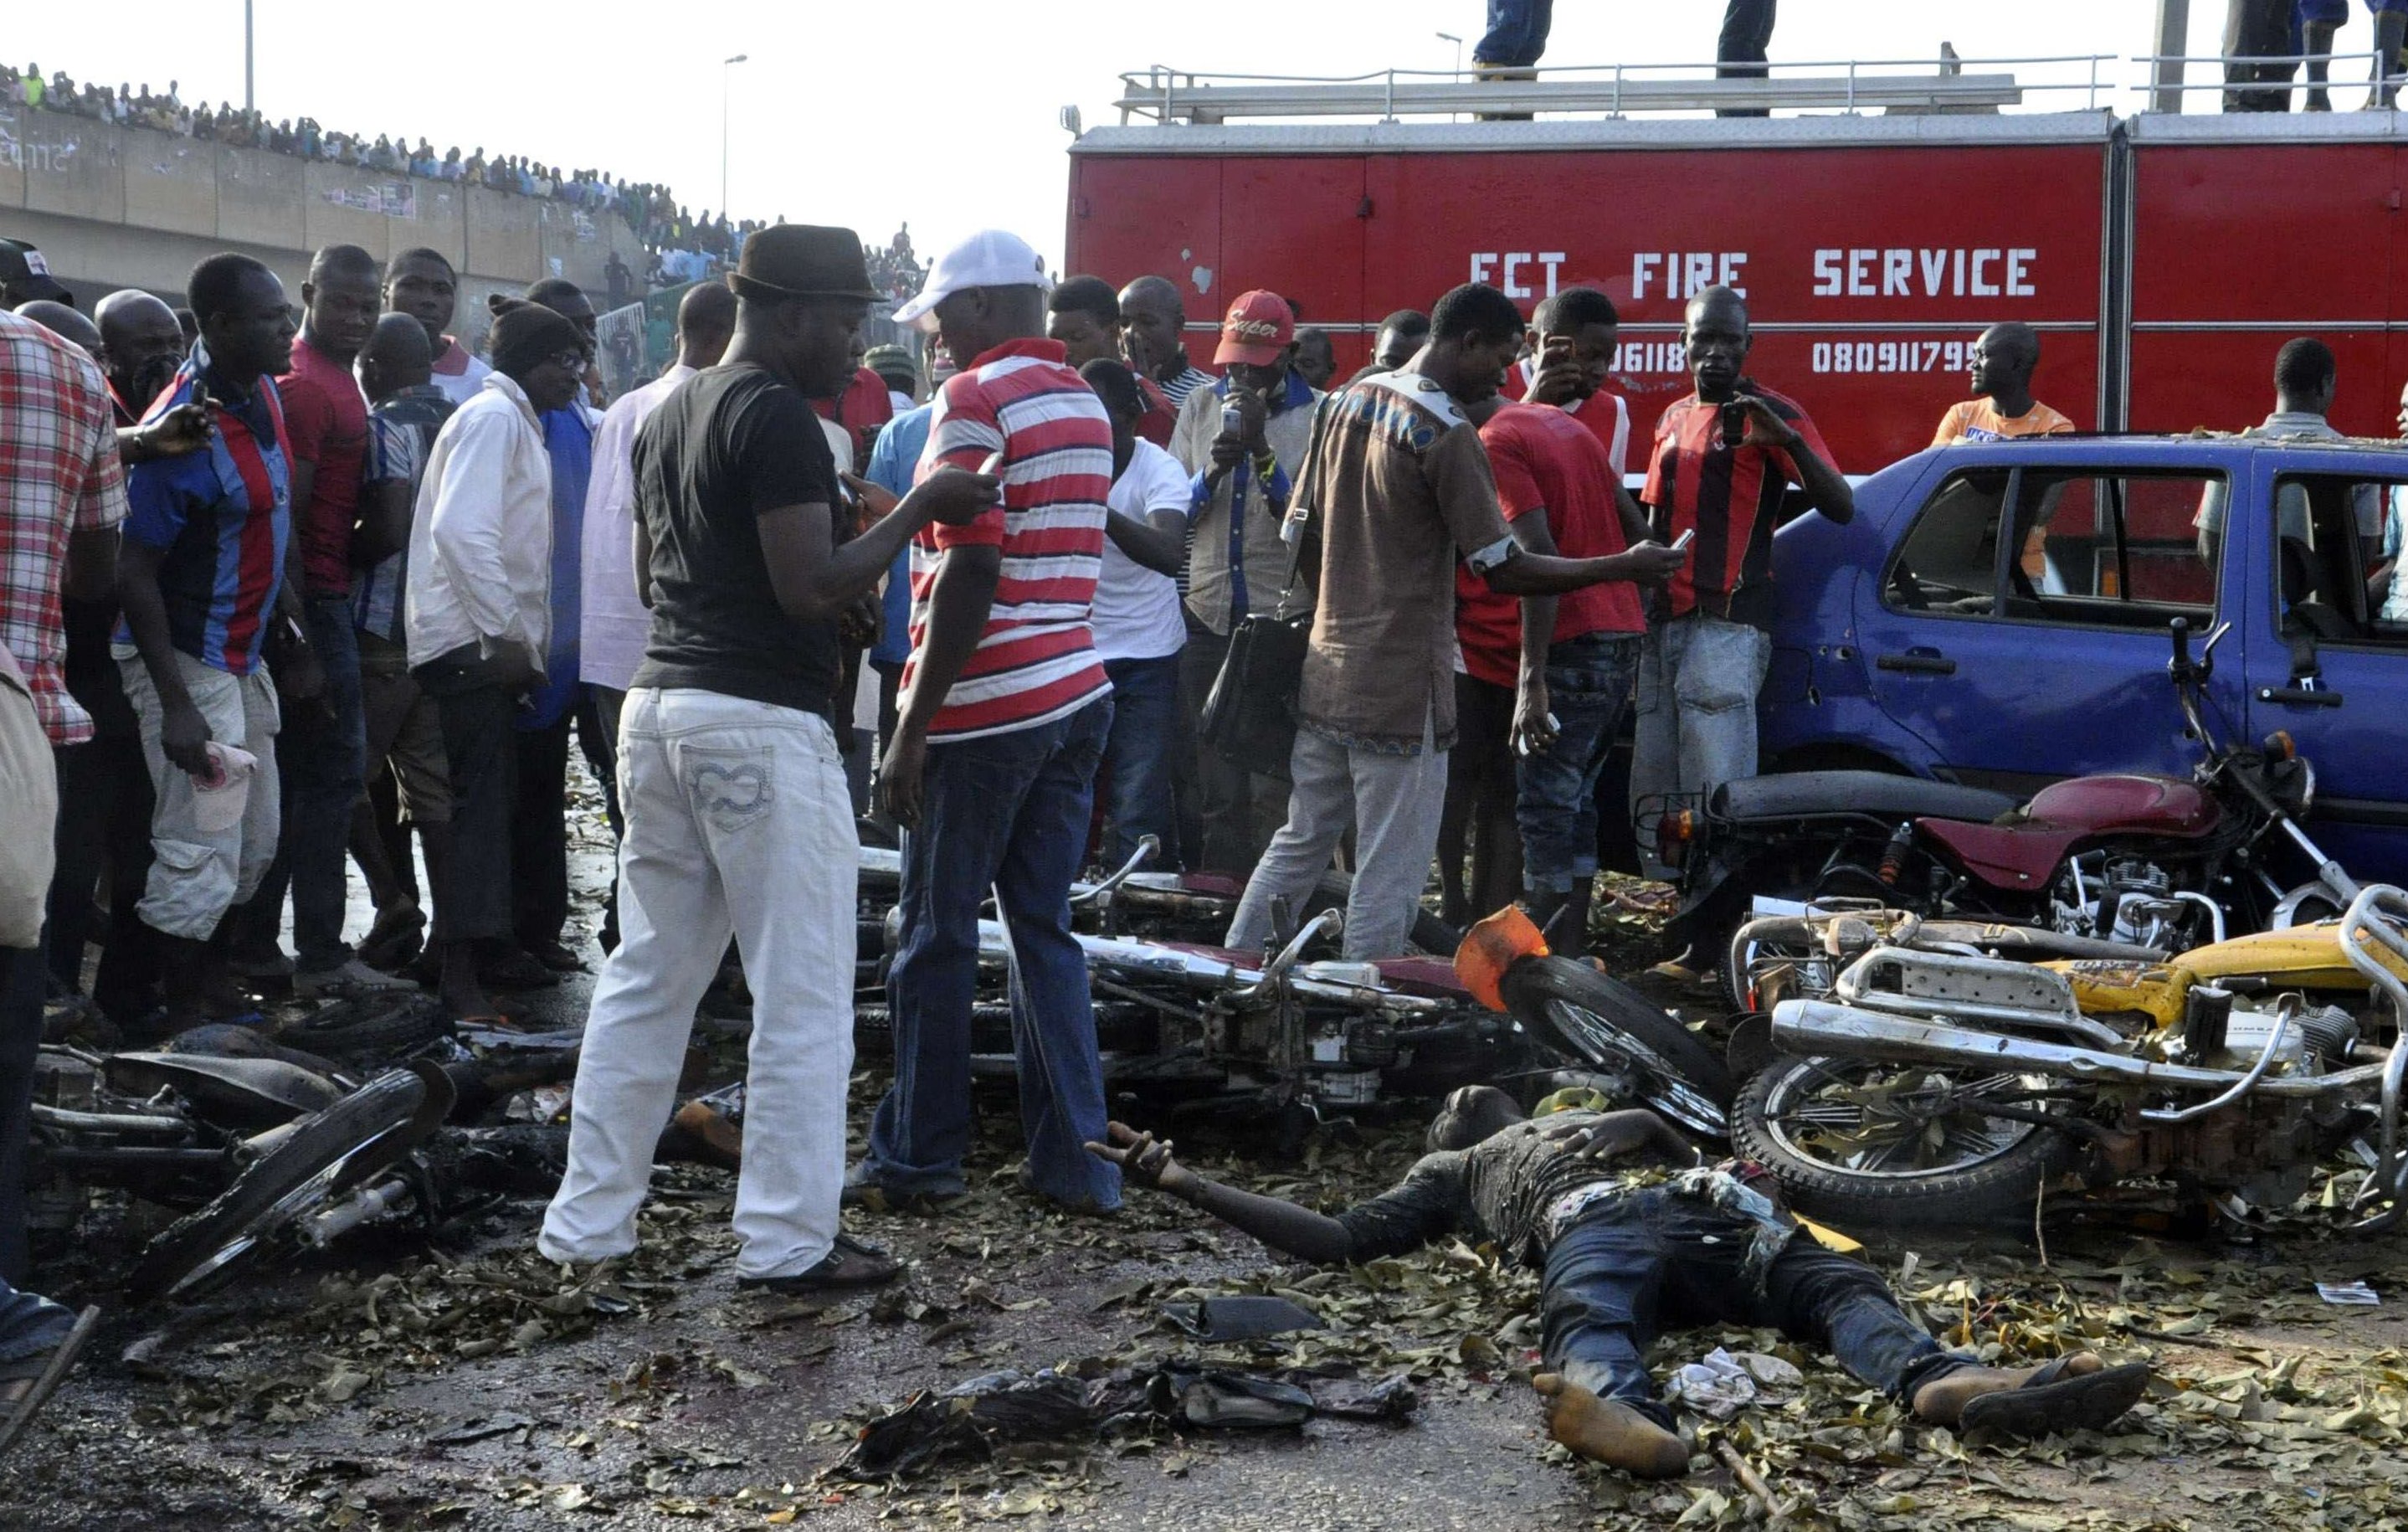 Nigeria: 27 morts dans des attentats-suicides